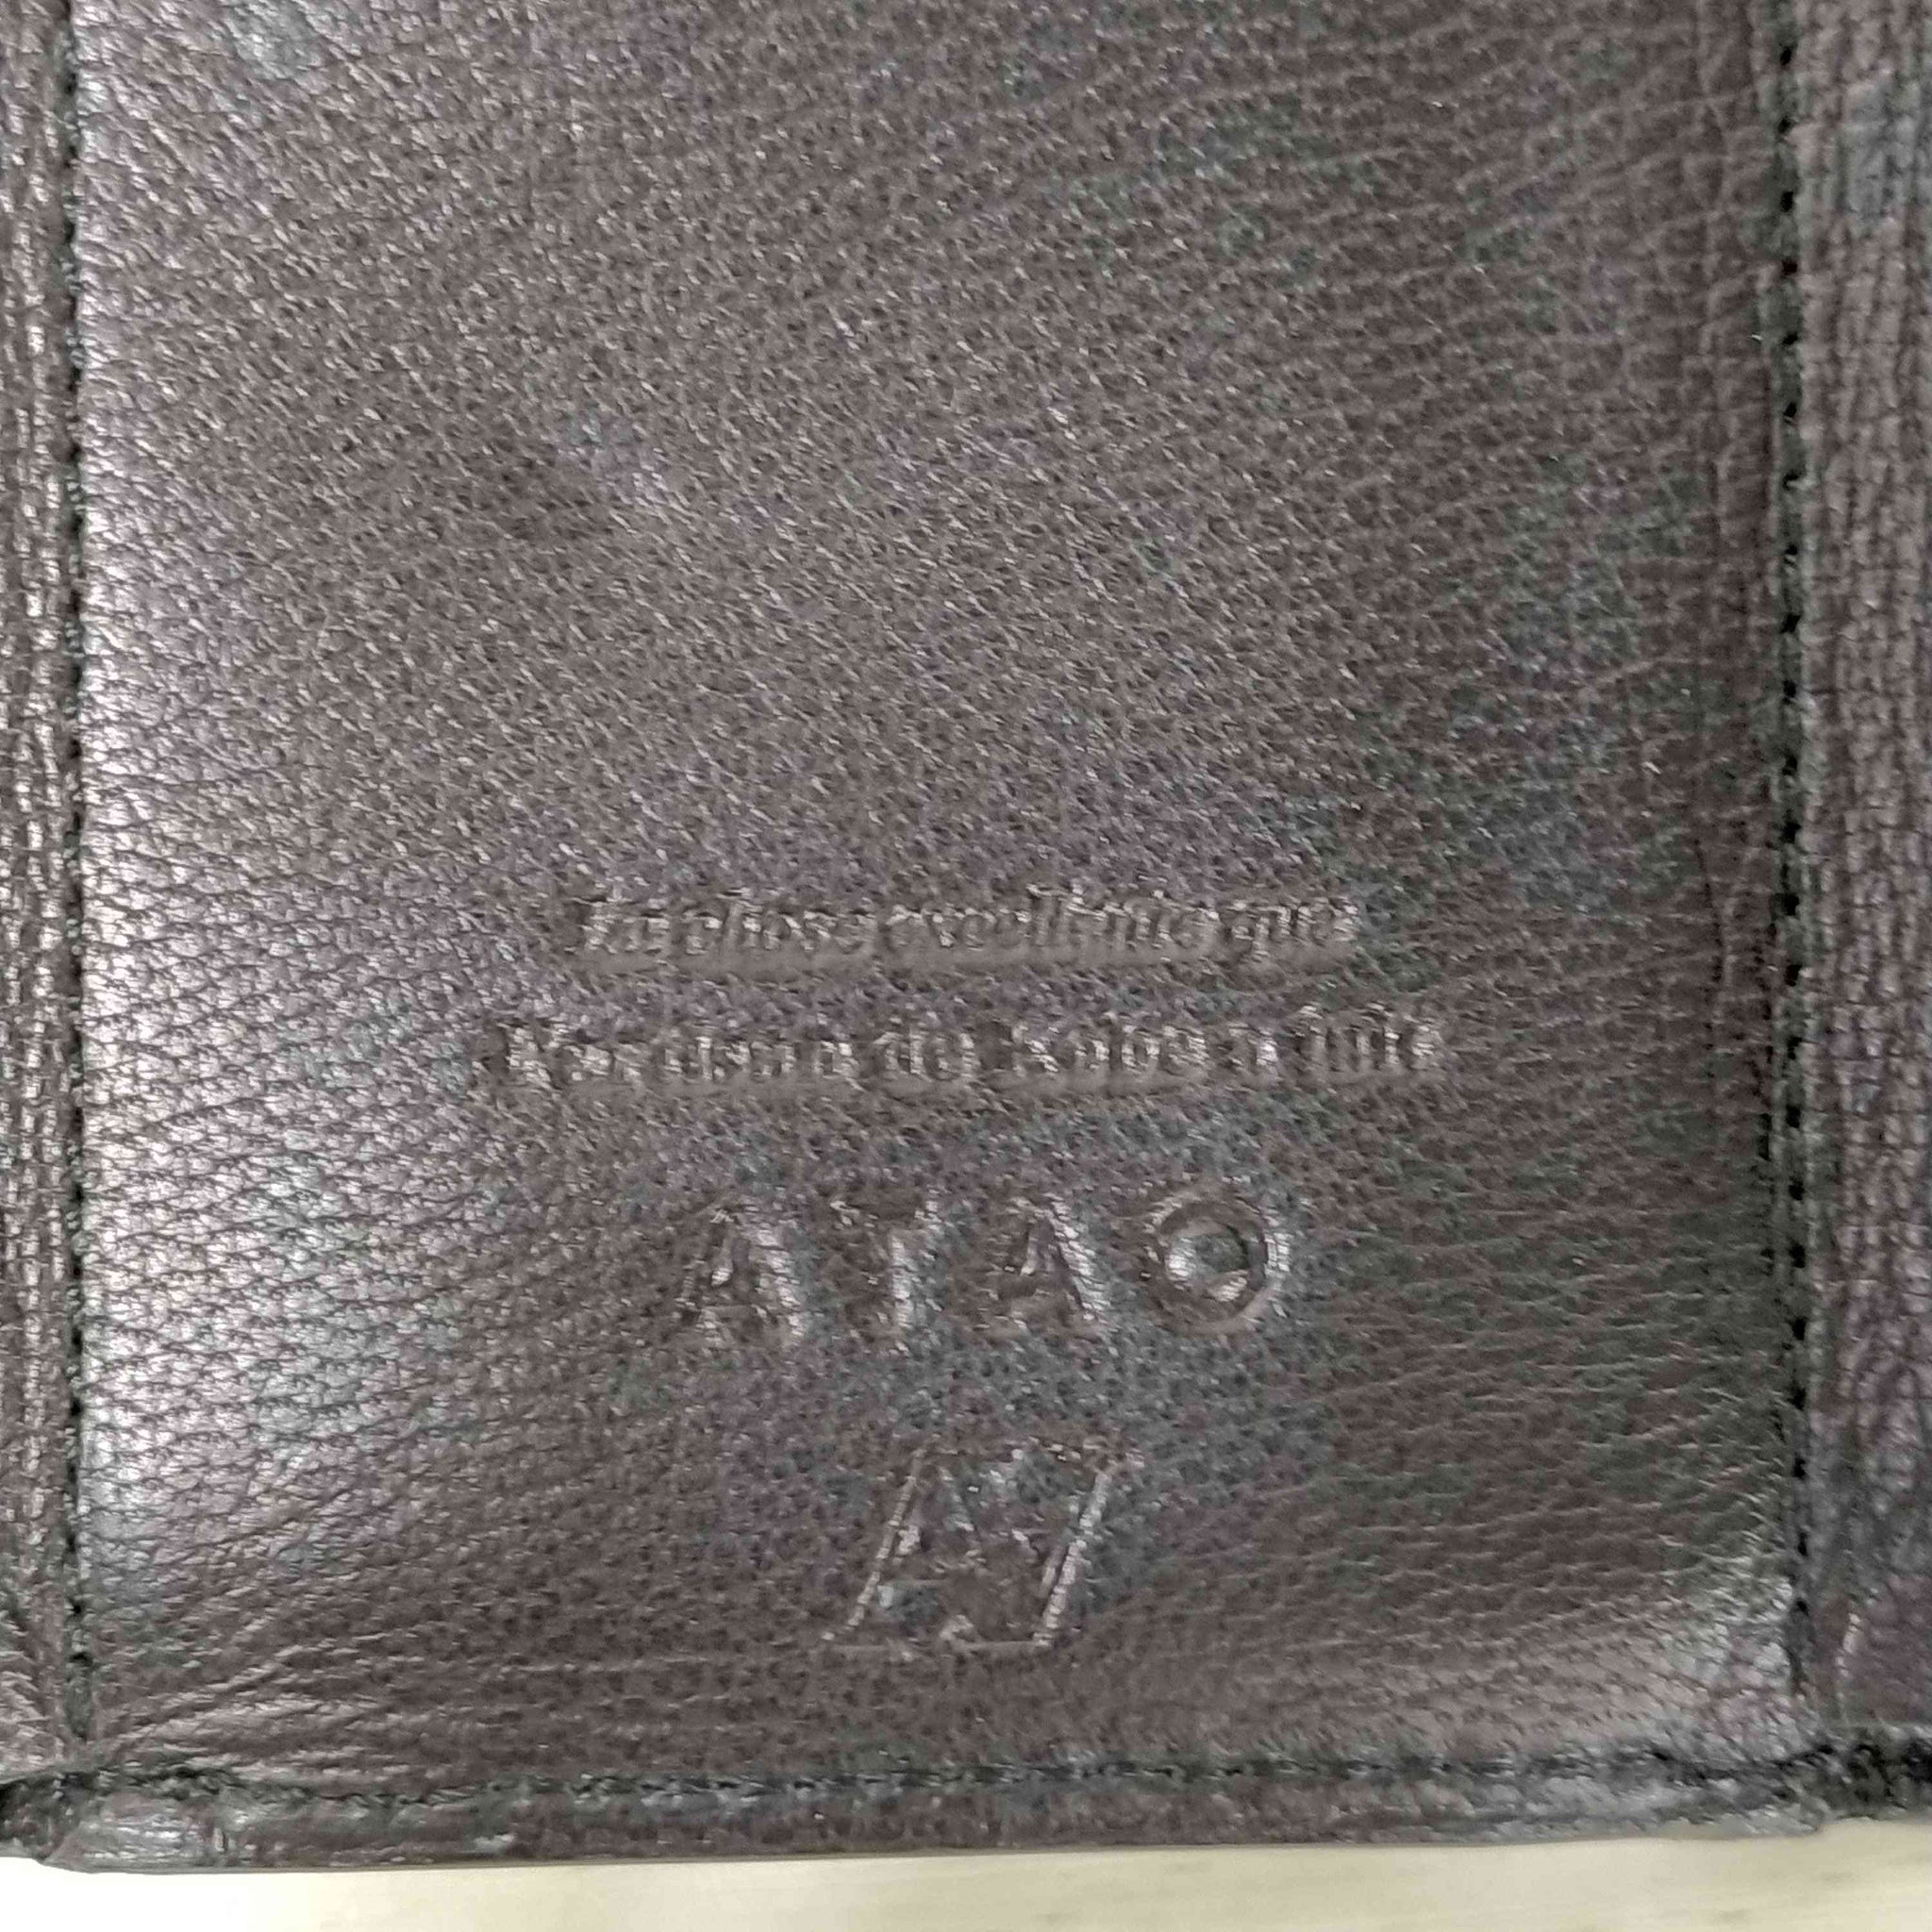 ATAO(アタオ)3つ折り財布 ミニ財布 コインケース